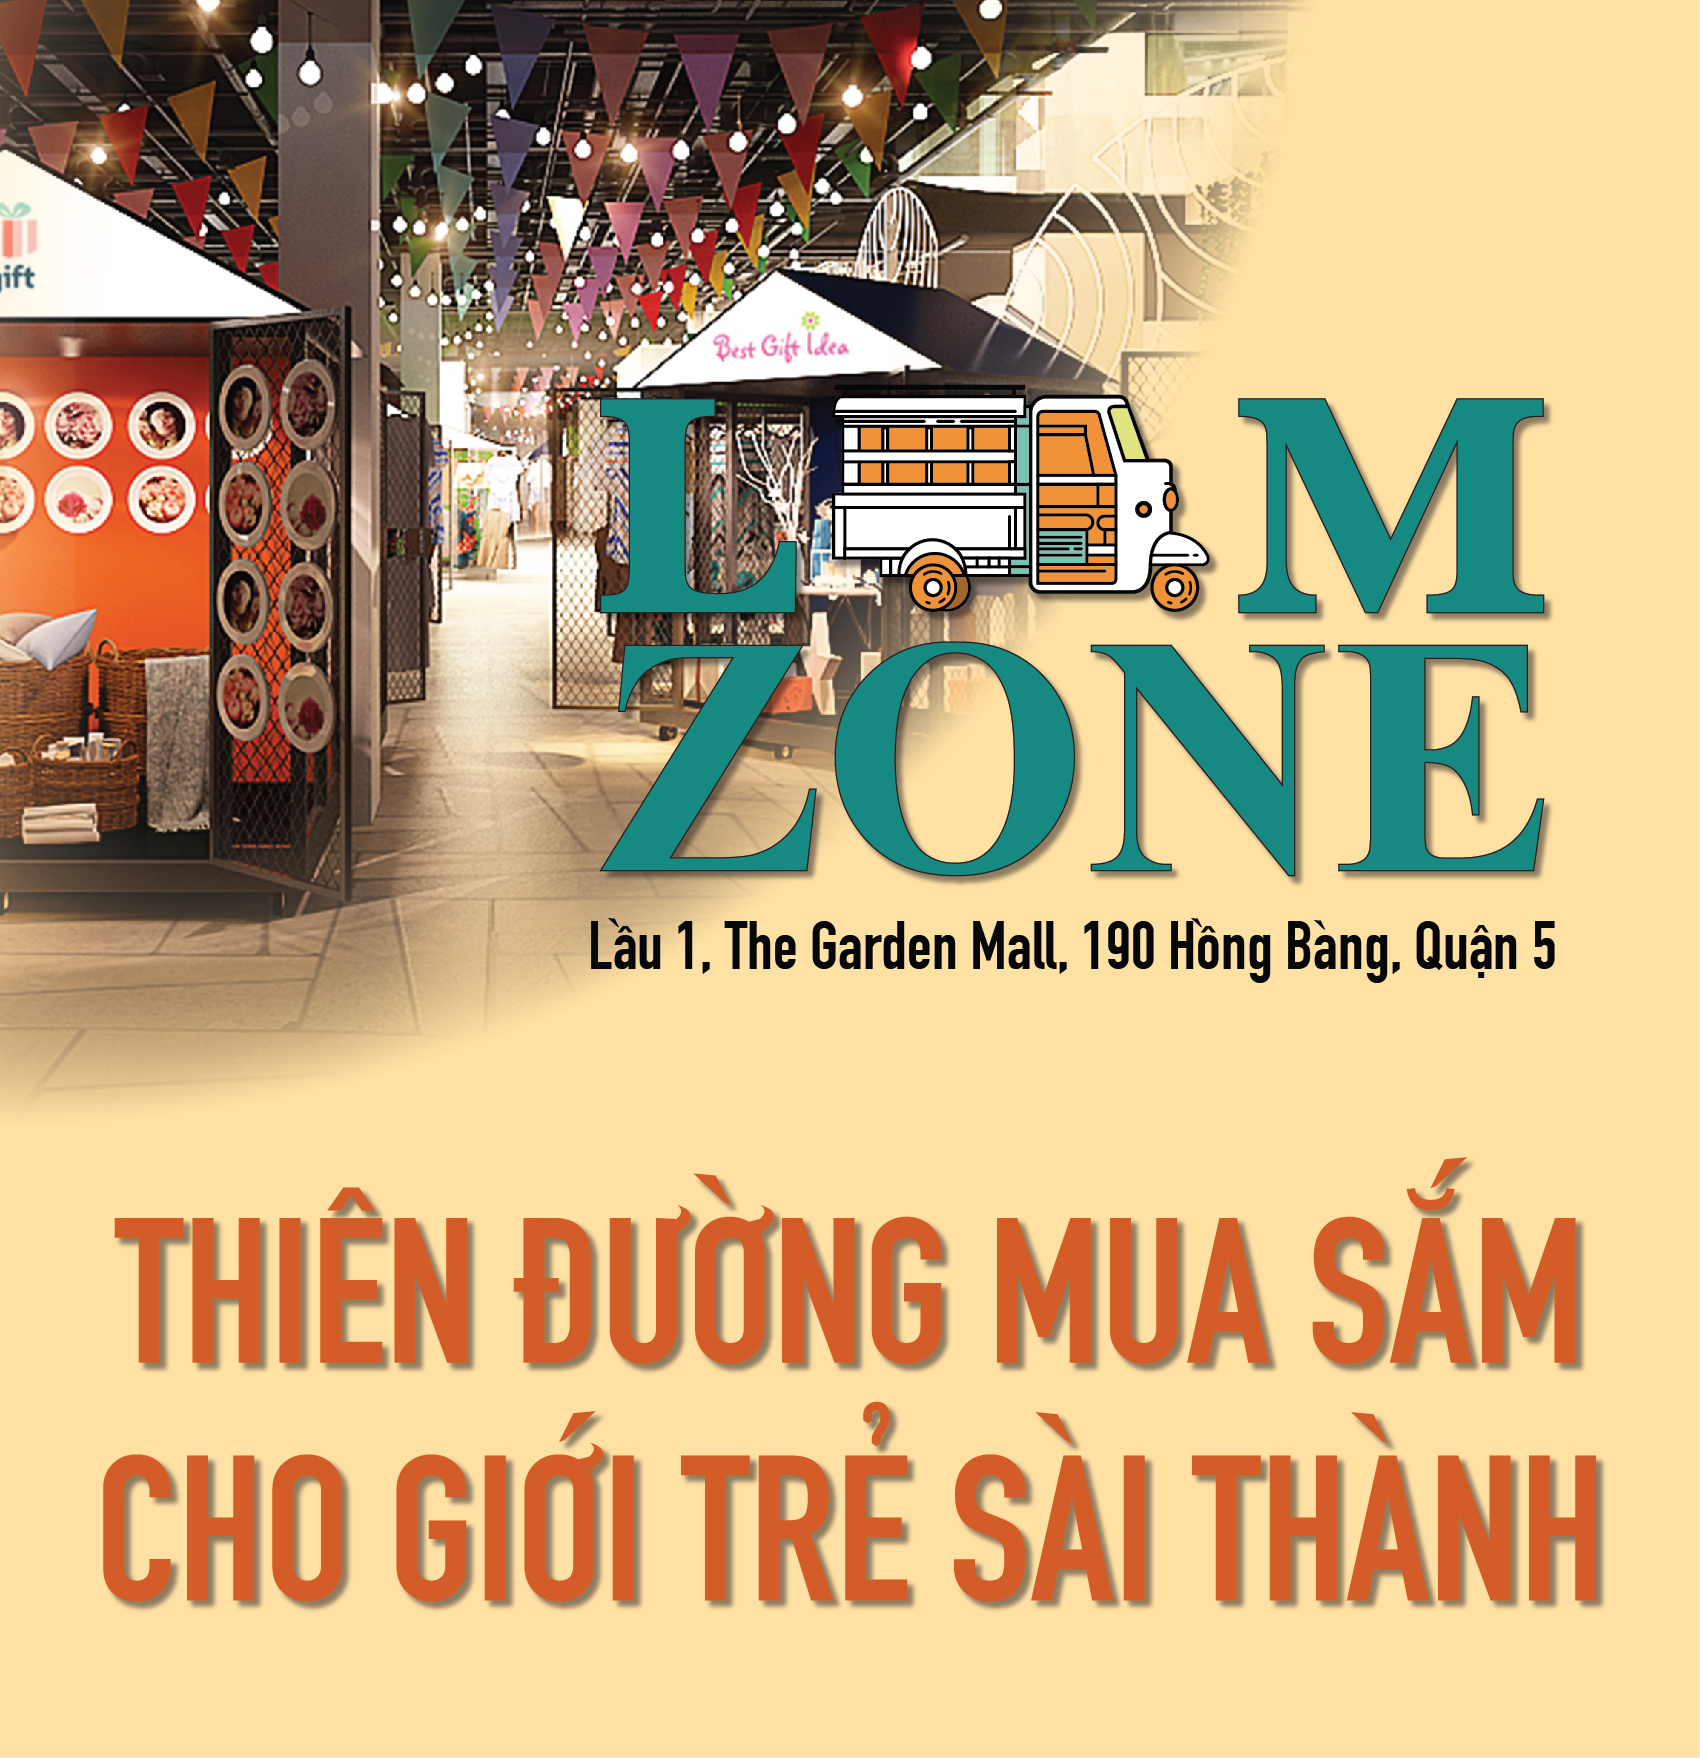 Cho thuê quầy hàng khu Lam Zone tại The Garden Mall